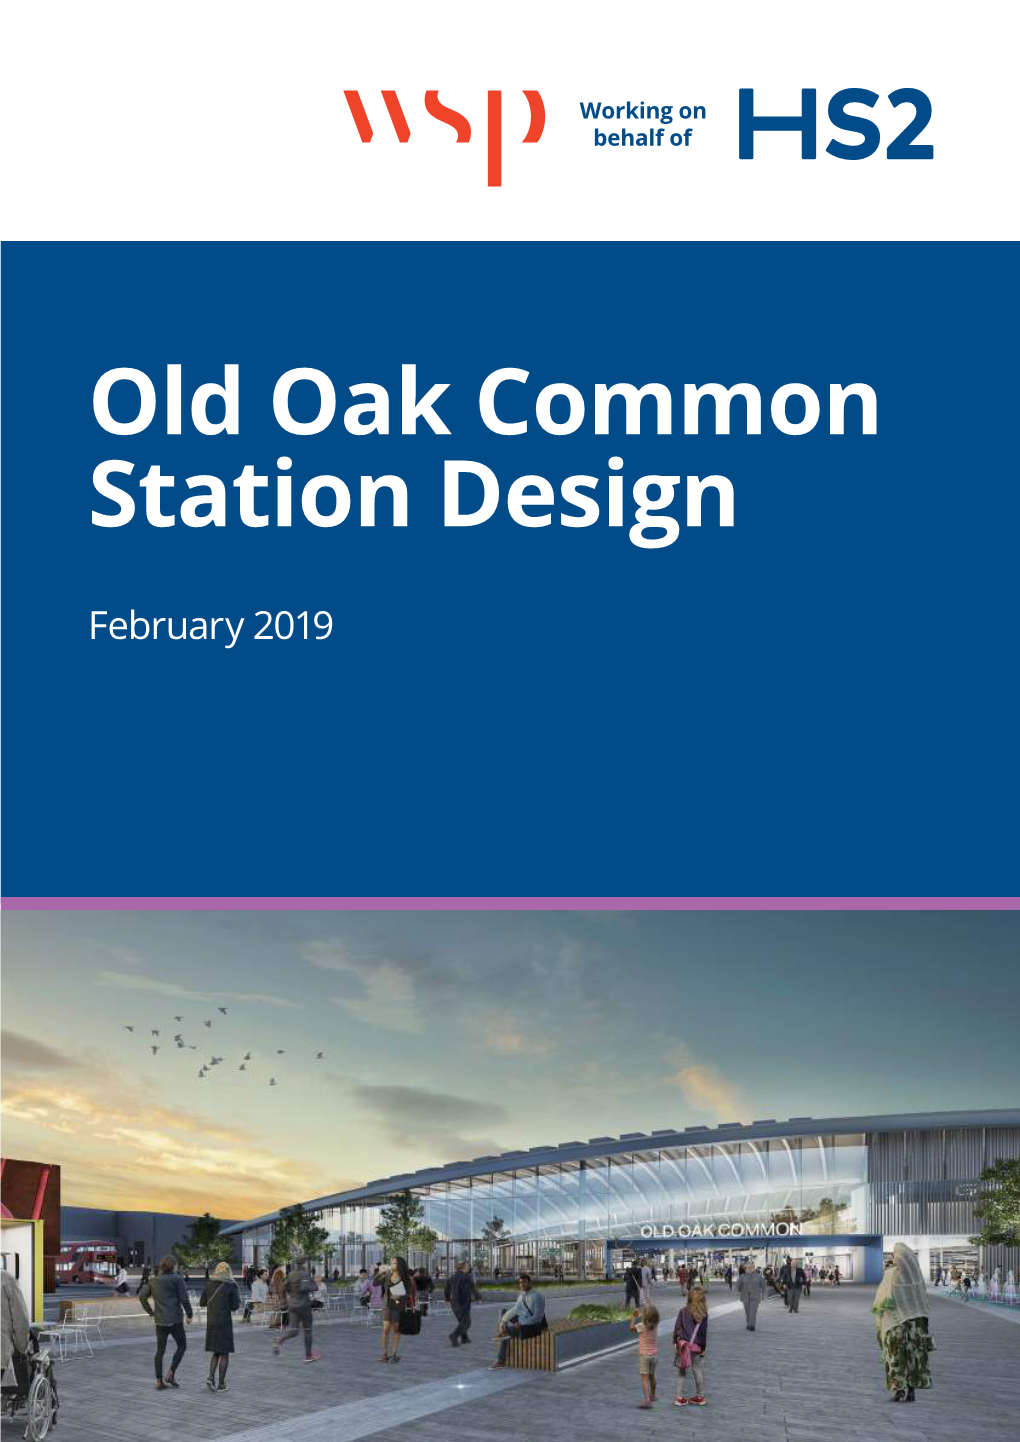 Old Oak Common Station Design